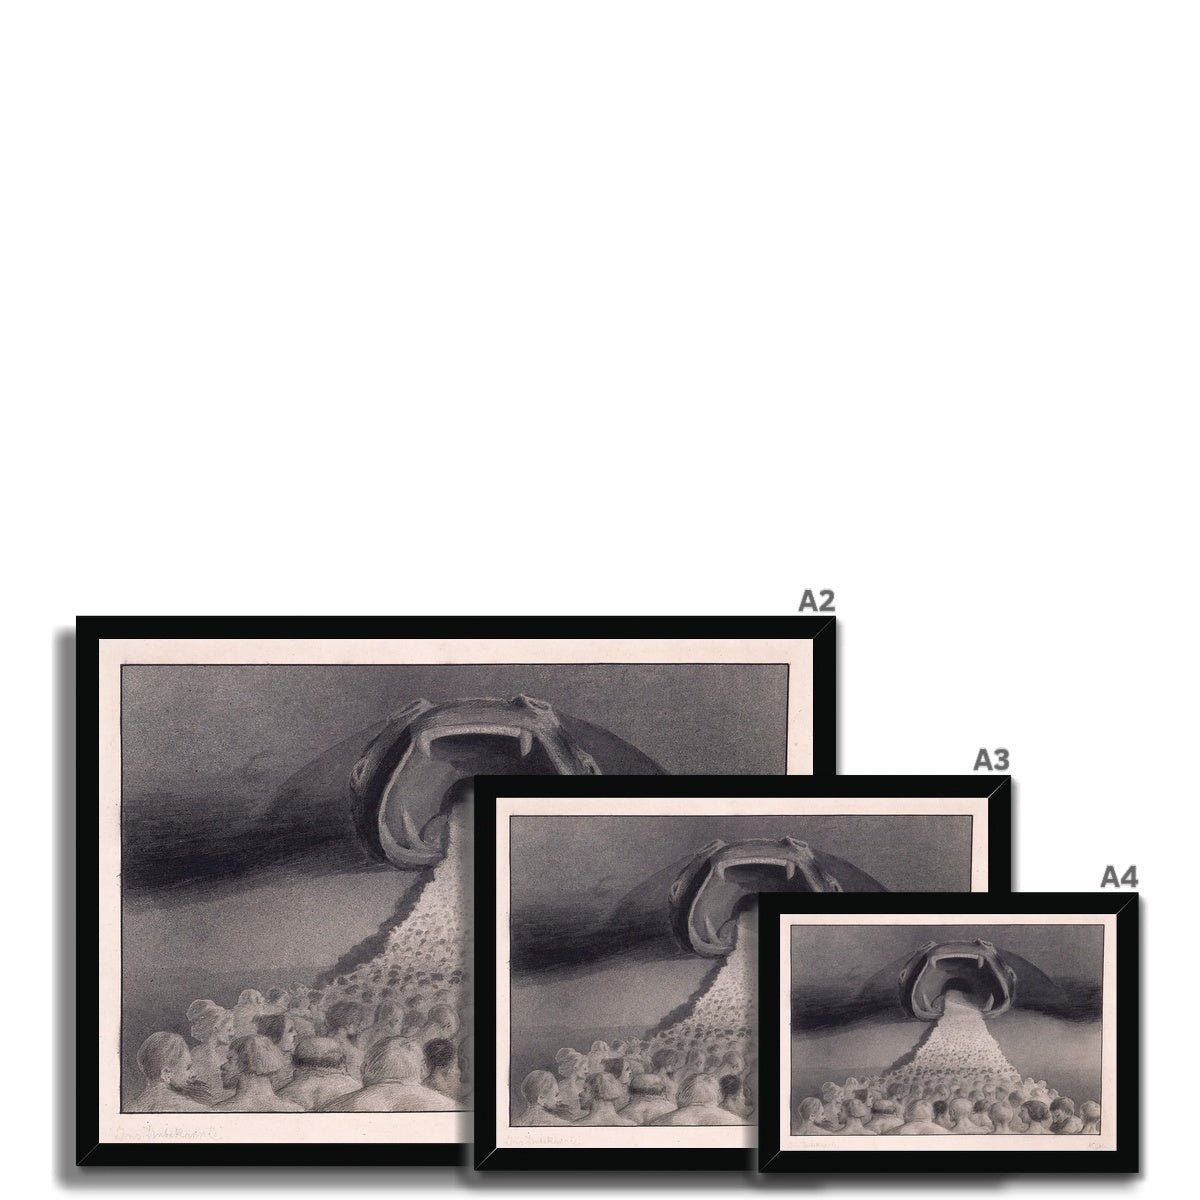 Framed Print A4 Landscape / Black Frame Framed Alfred Kubin - Into The Unknown Symbolist Surreal Wall Art Antique Gothic Supernatural Decor Dark Occult Framed Art Print